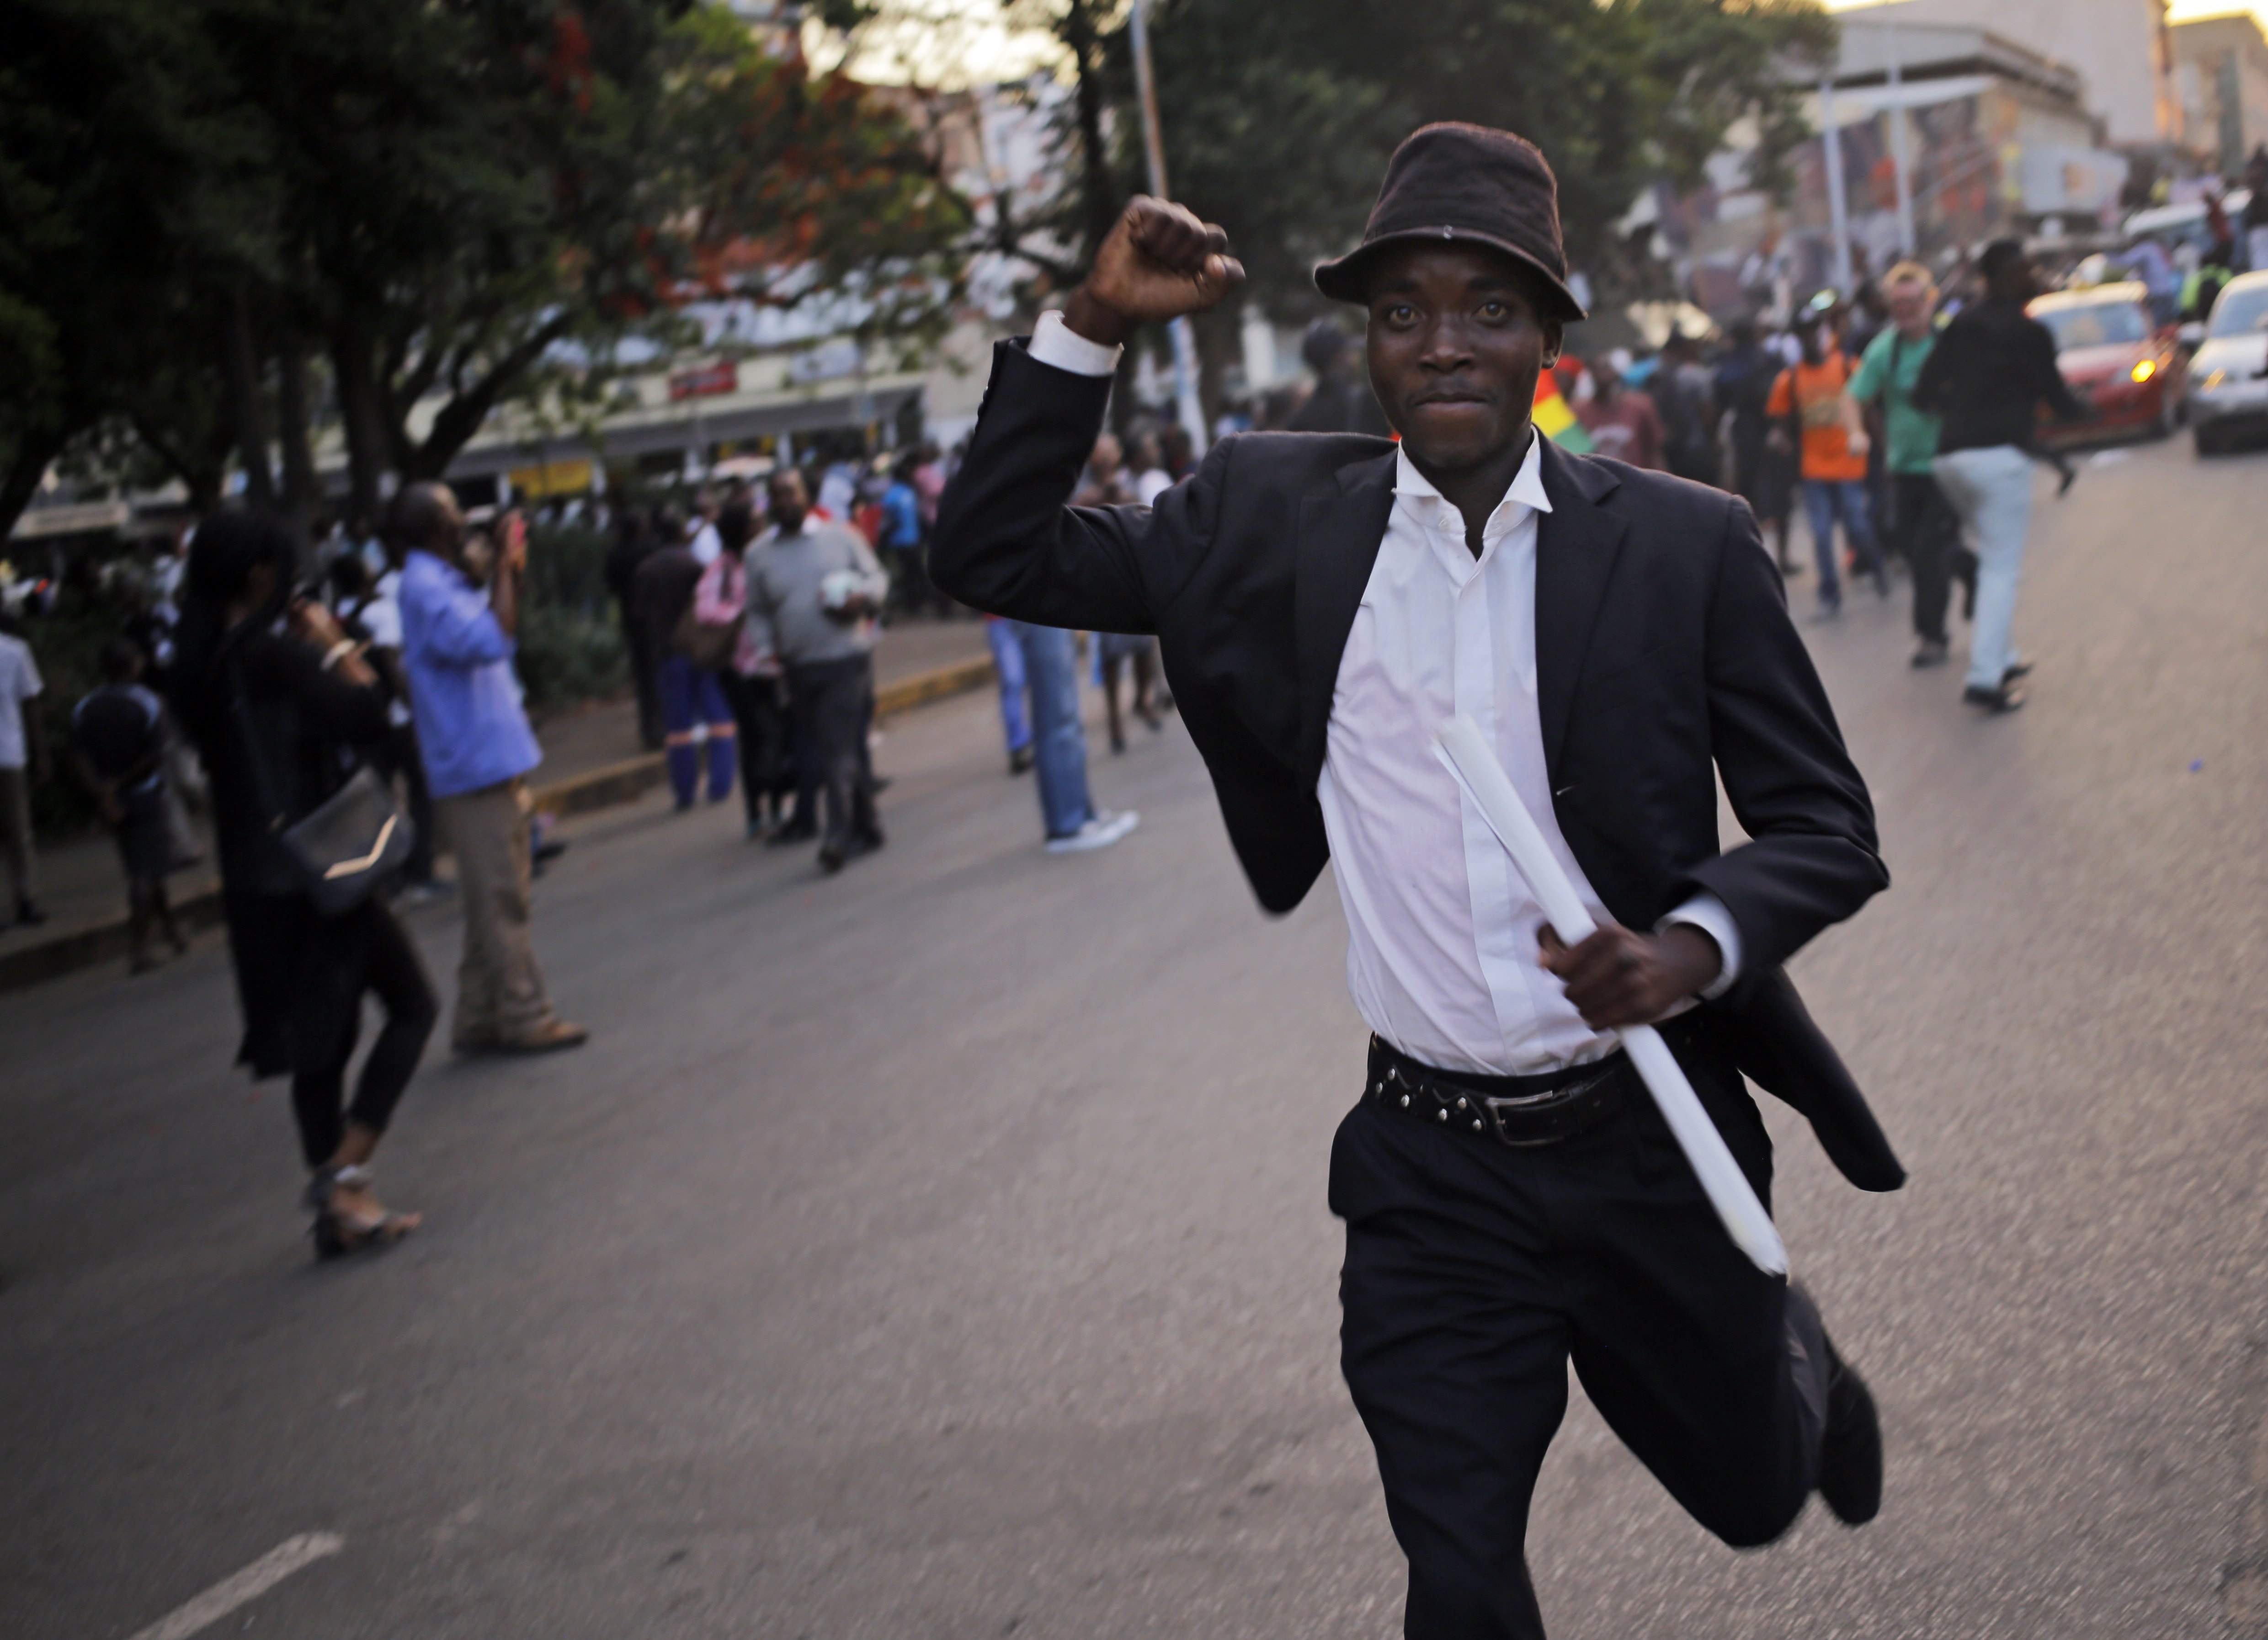 Изненадващото съобщение прекрати изслушването в парламента, започнало срещу президента Робърт Мугабе. Депутатите реагираха на новината с радостни възгласи, а хората започнаха да ликуват по улиците